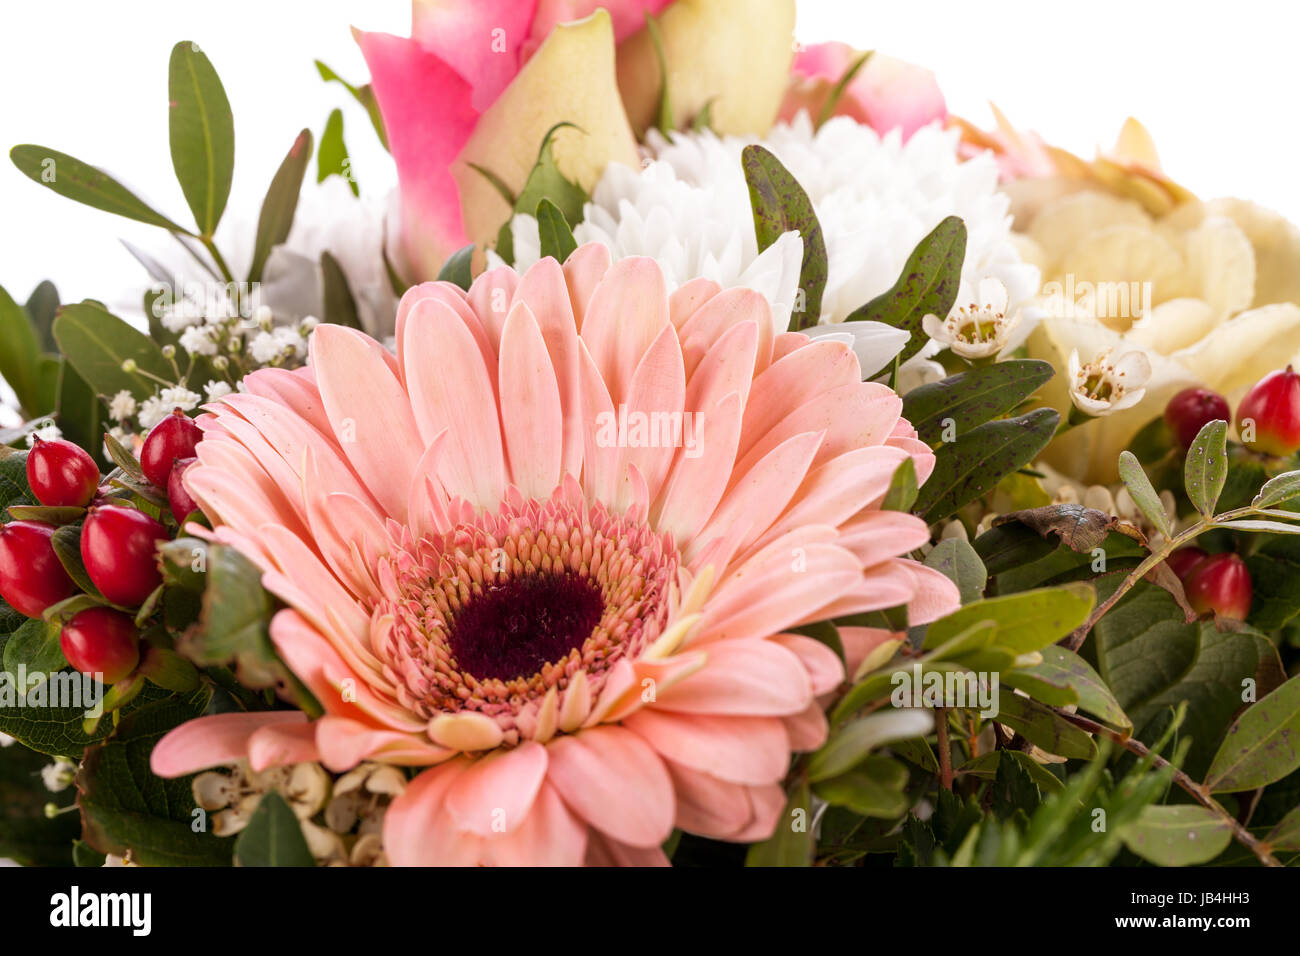 Frische schöne schnittblumen strauss dans rosa weiss gerbera rosen grün festlich dekoration Banque D'Images